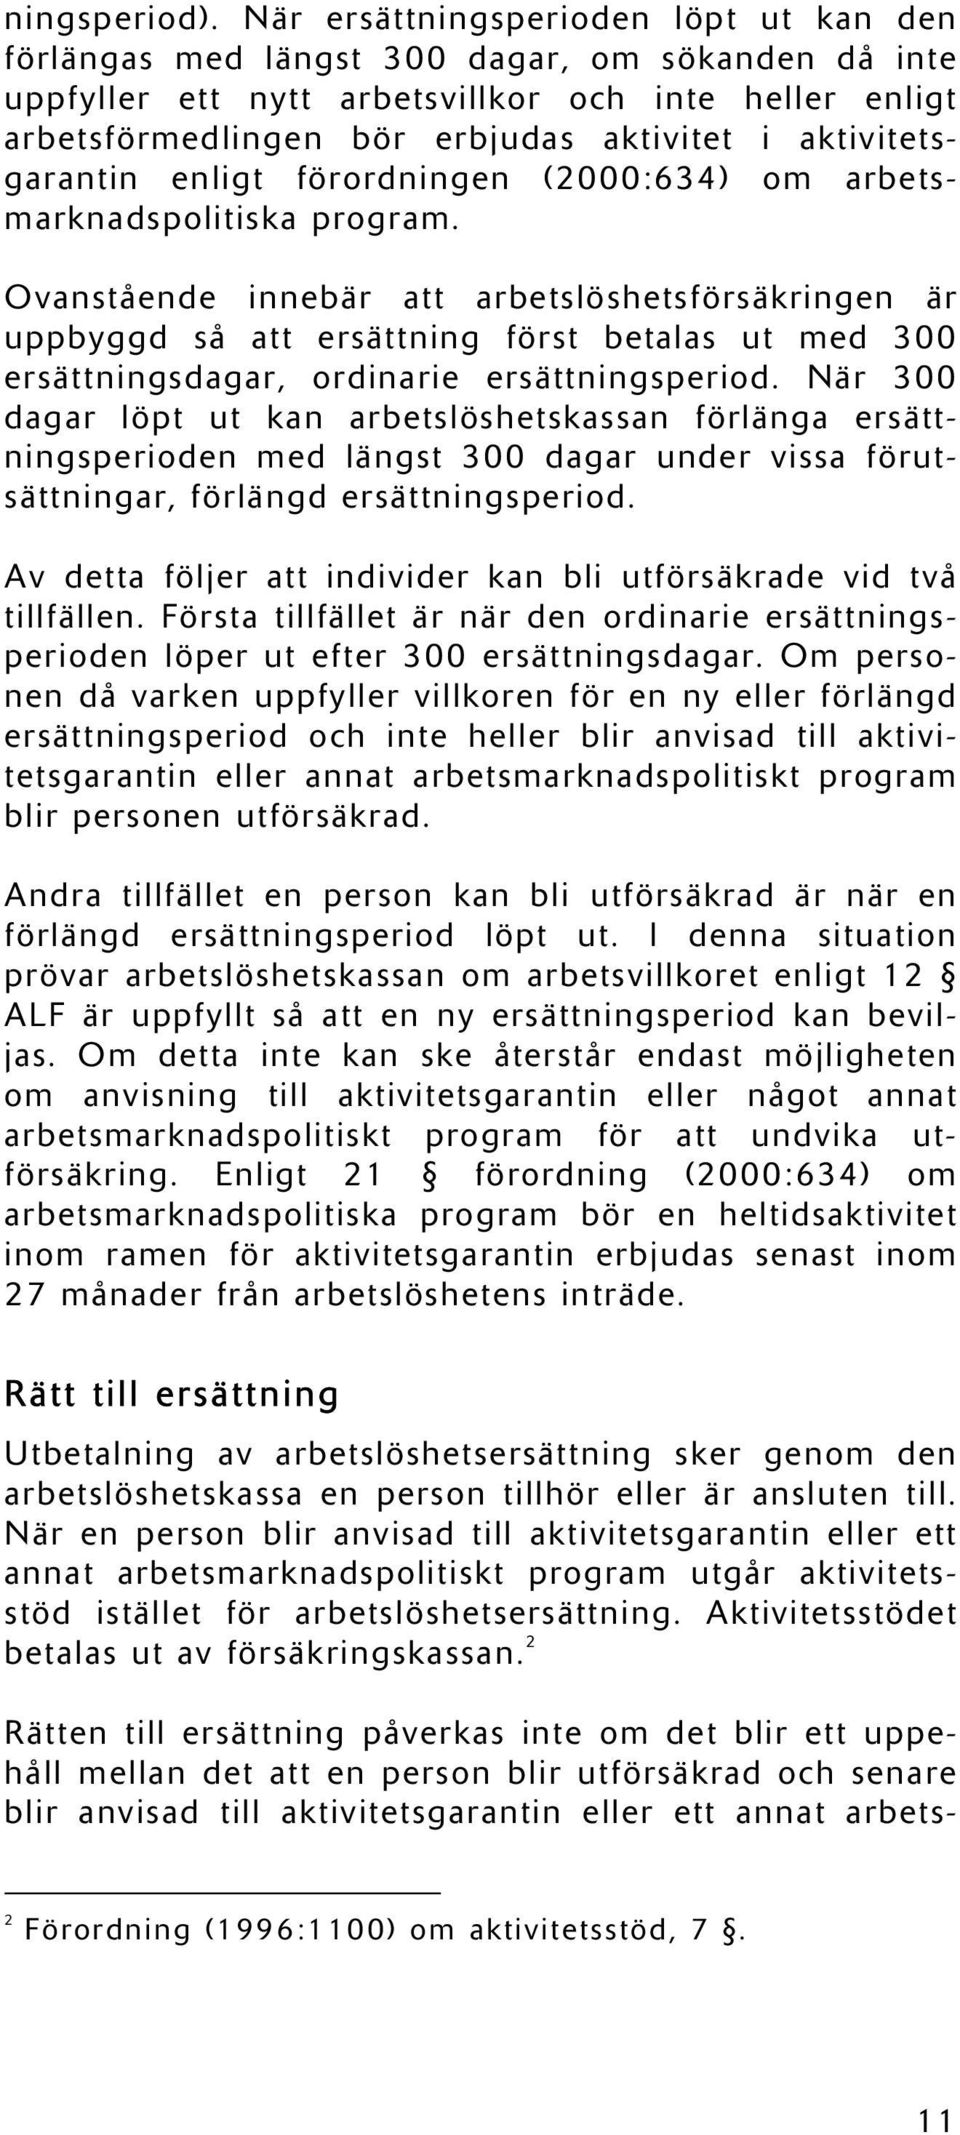 aktivitetsgarantin enligt förordningen (2000:634) om arbetsmarknadspolitiska program.